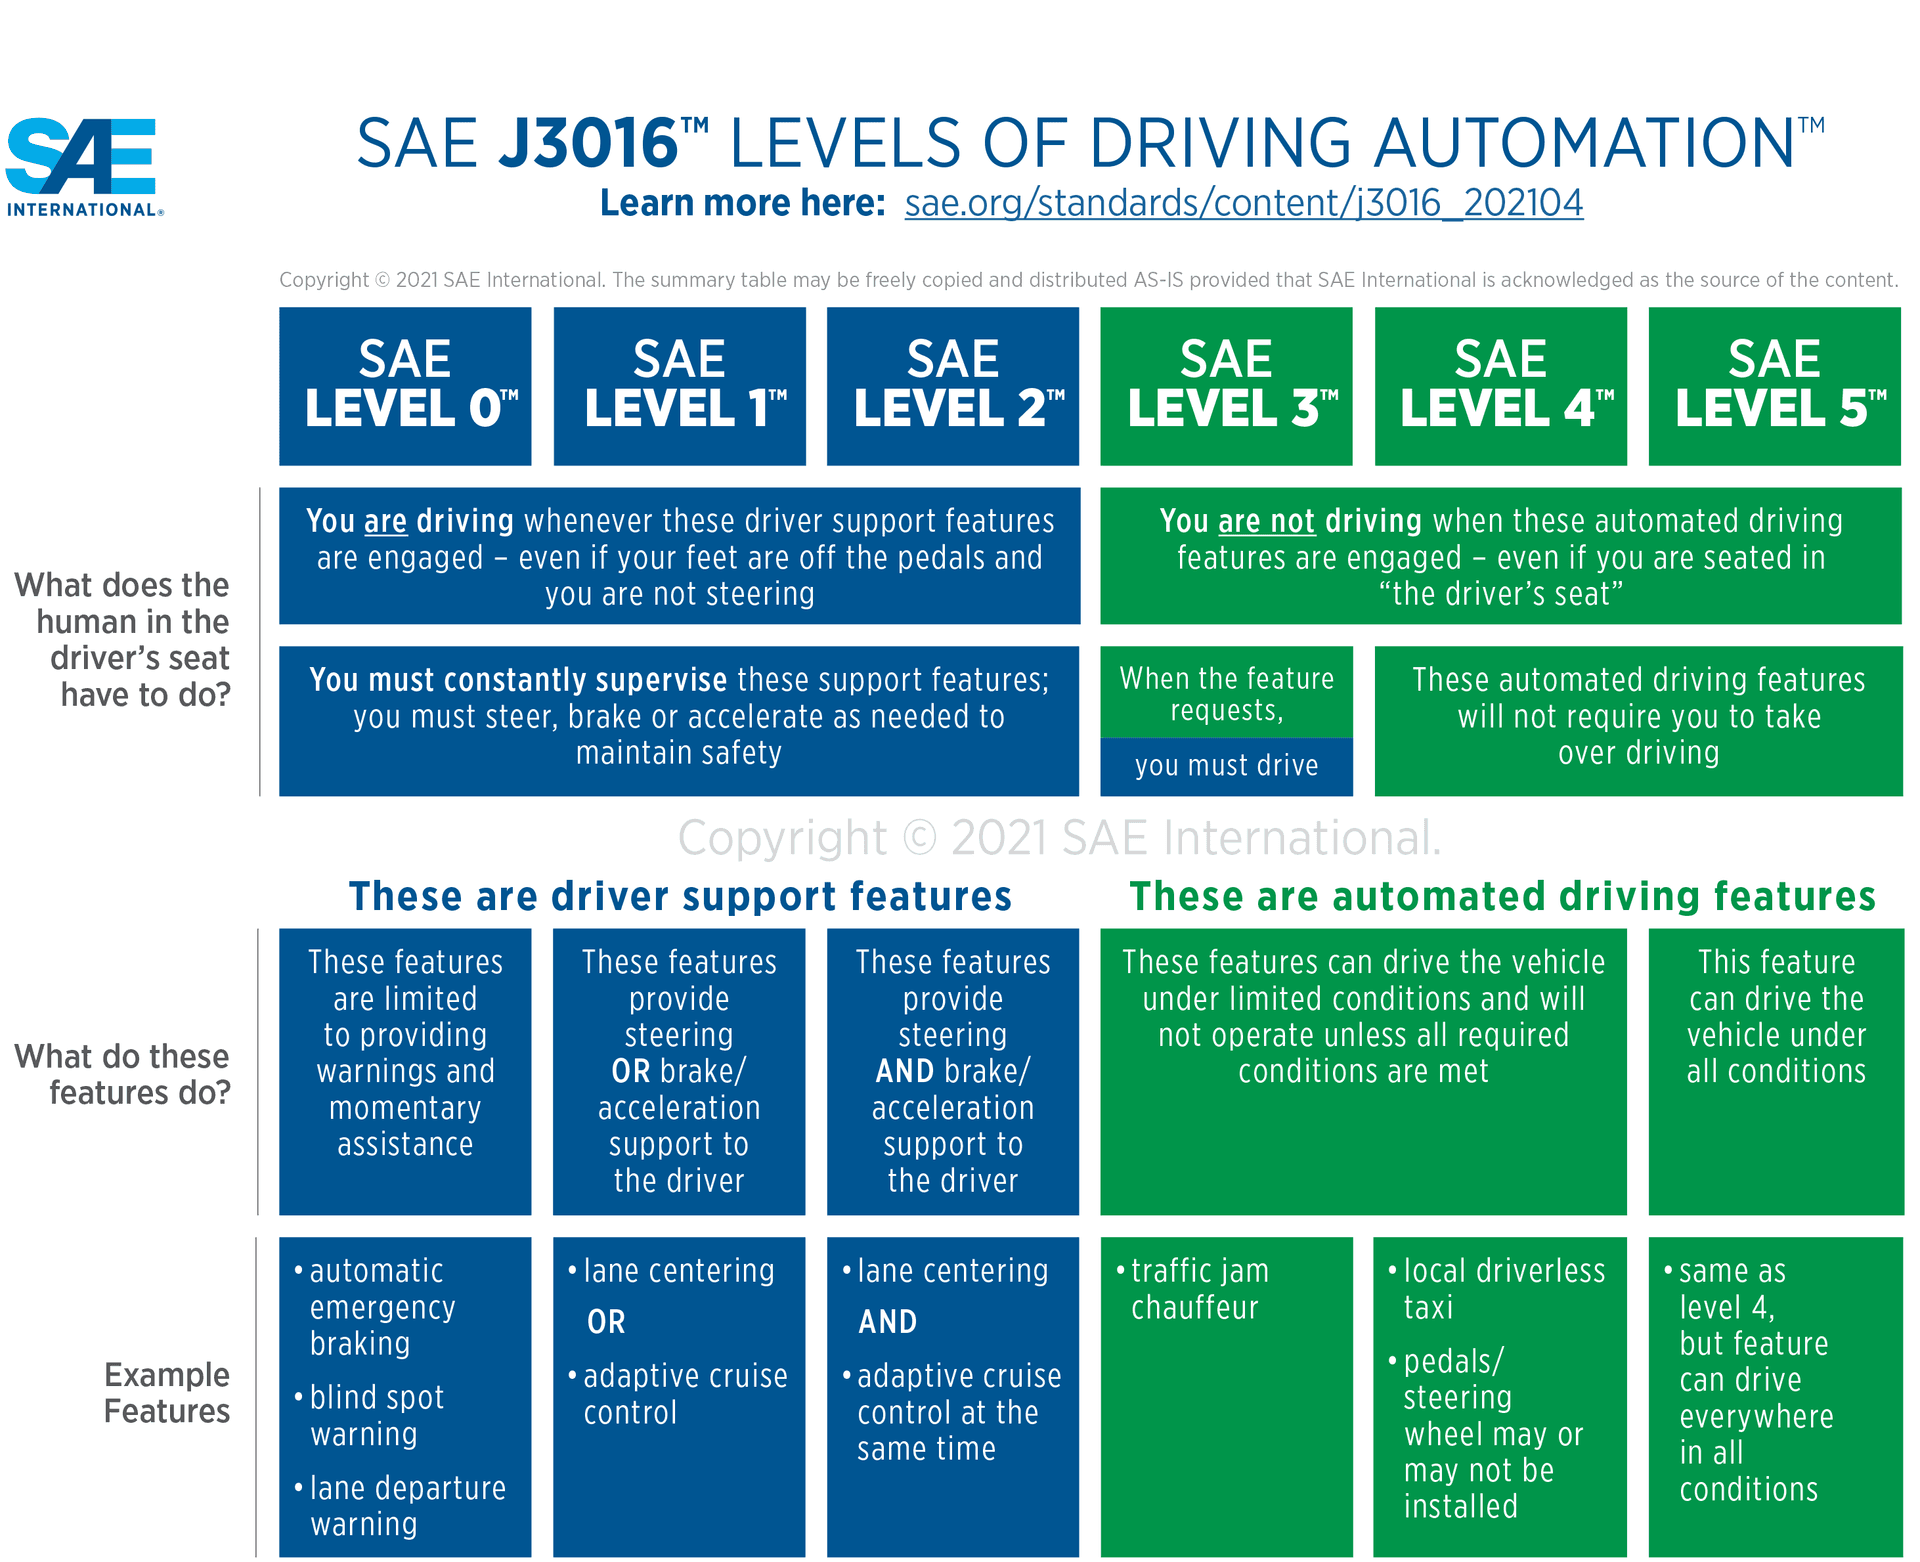 Infographie de la SAE détaillant les 6 niveaux de conduite autonome